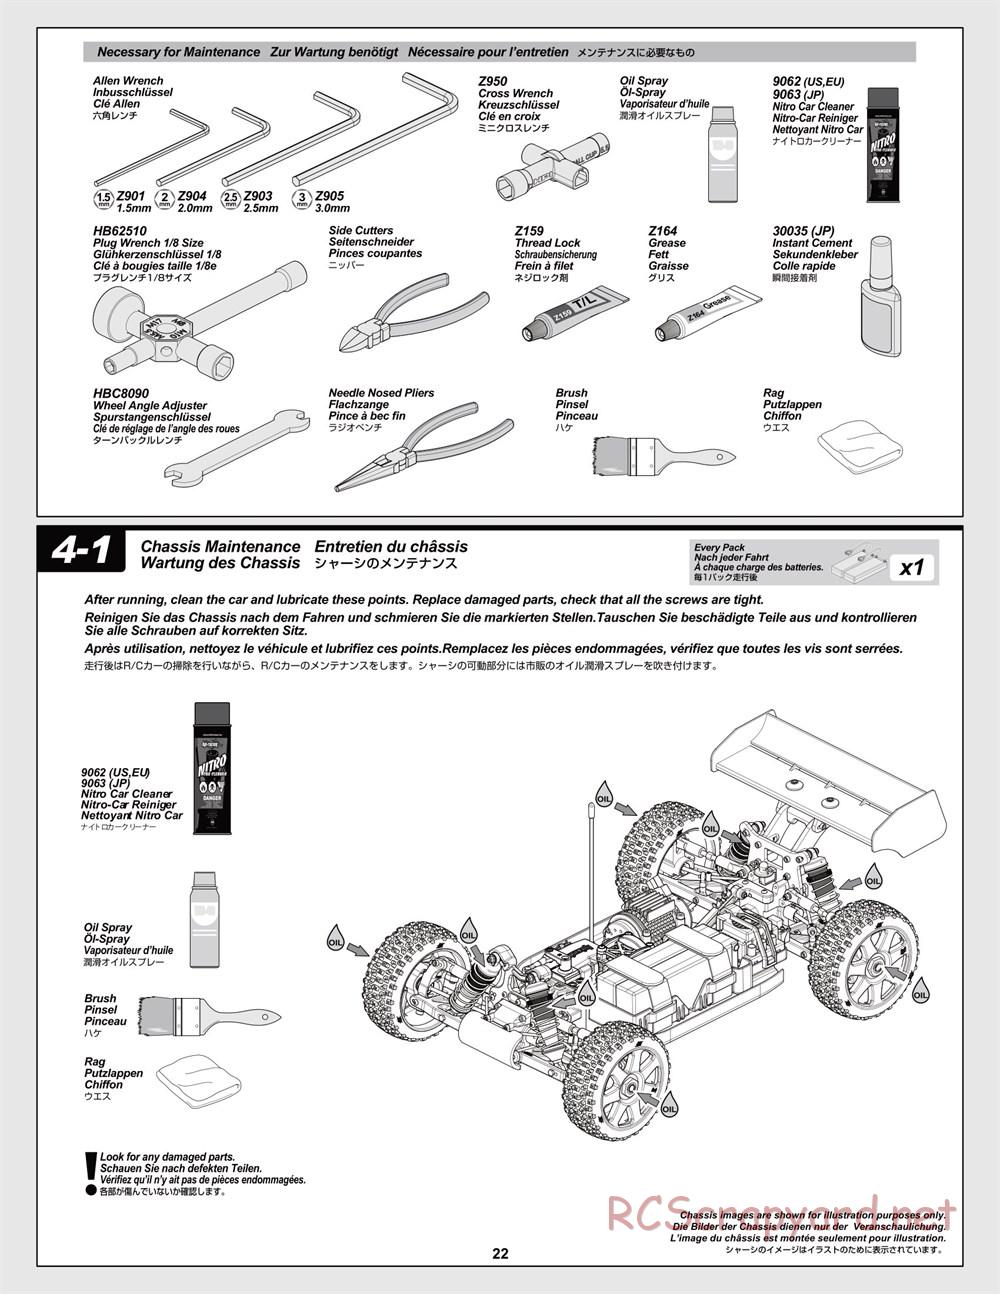 HPI - Trophy Flux Buggy - Manual - Page 22